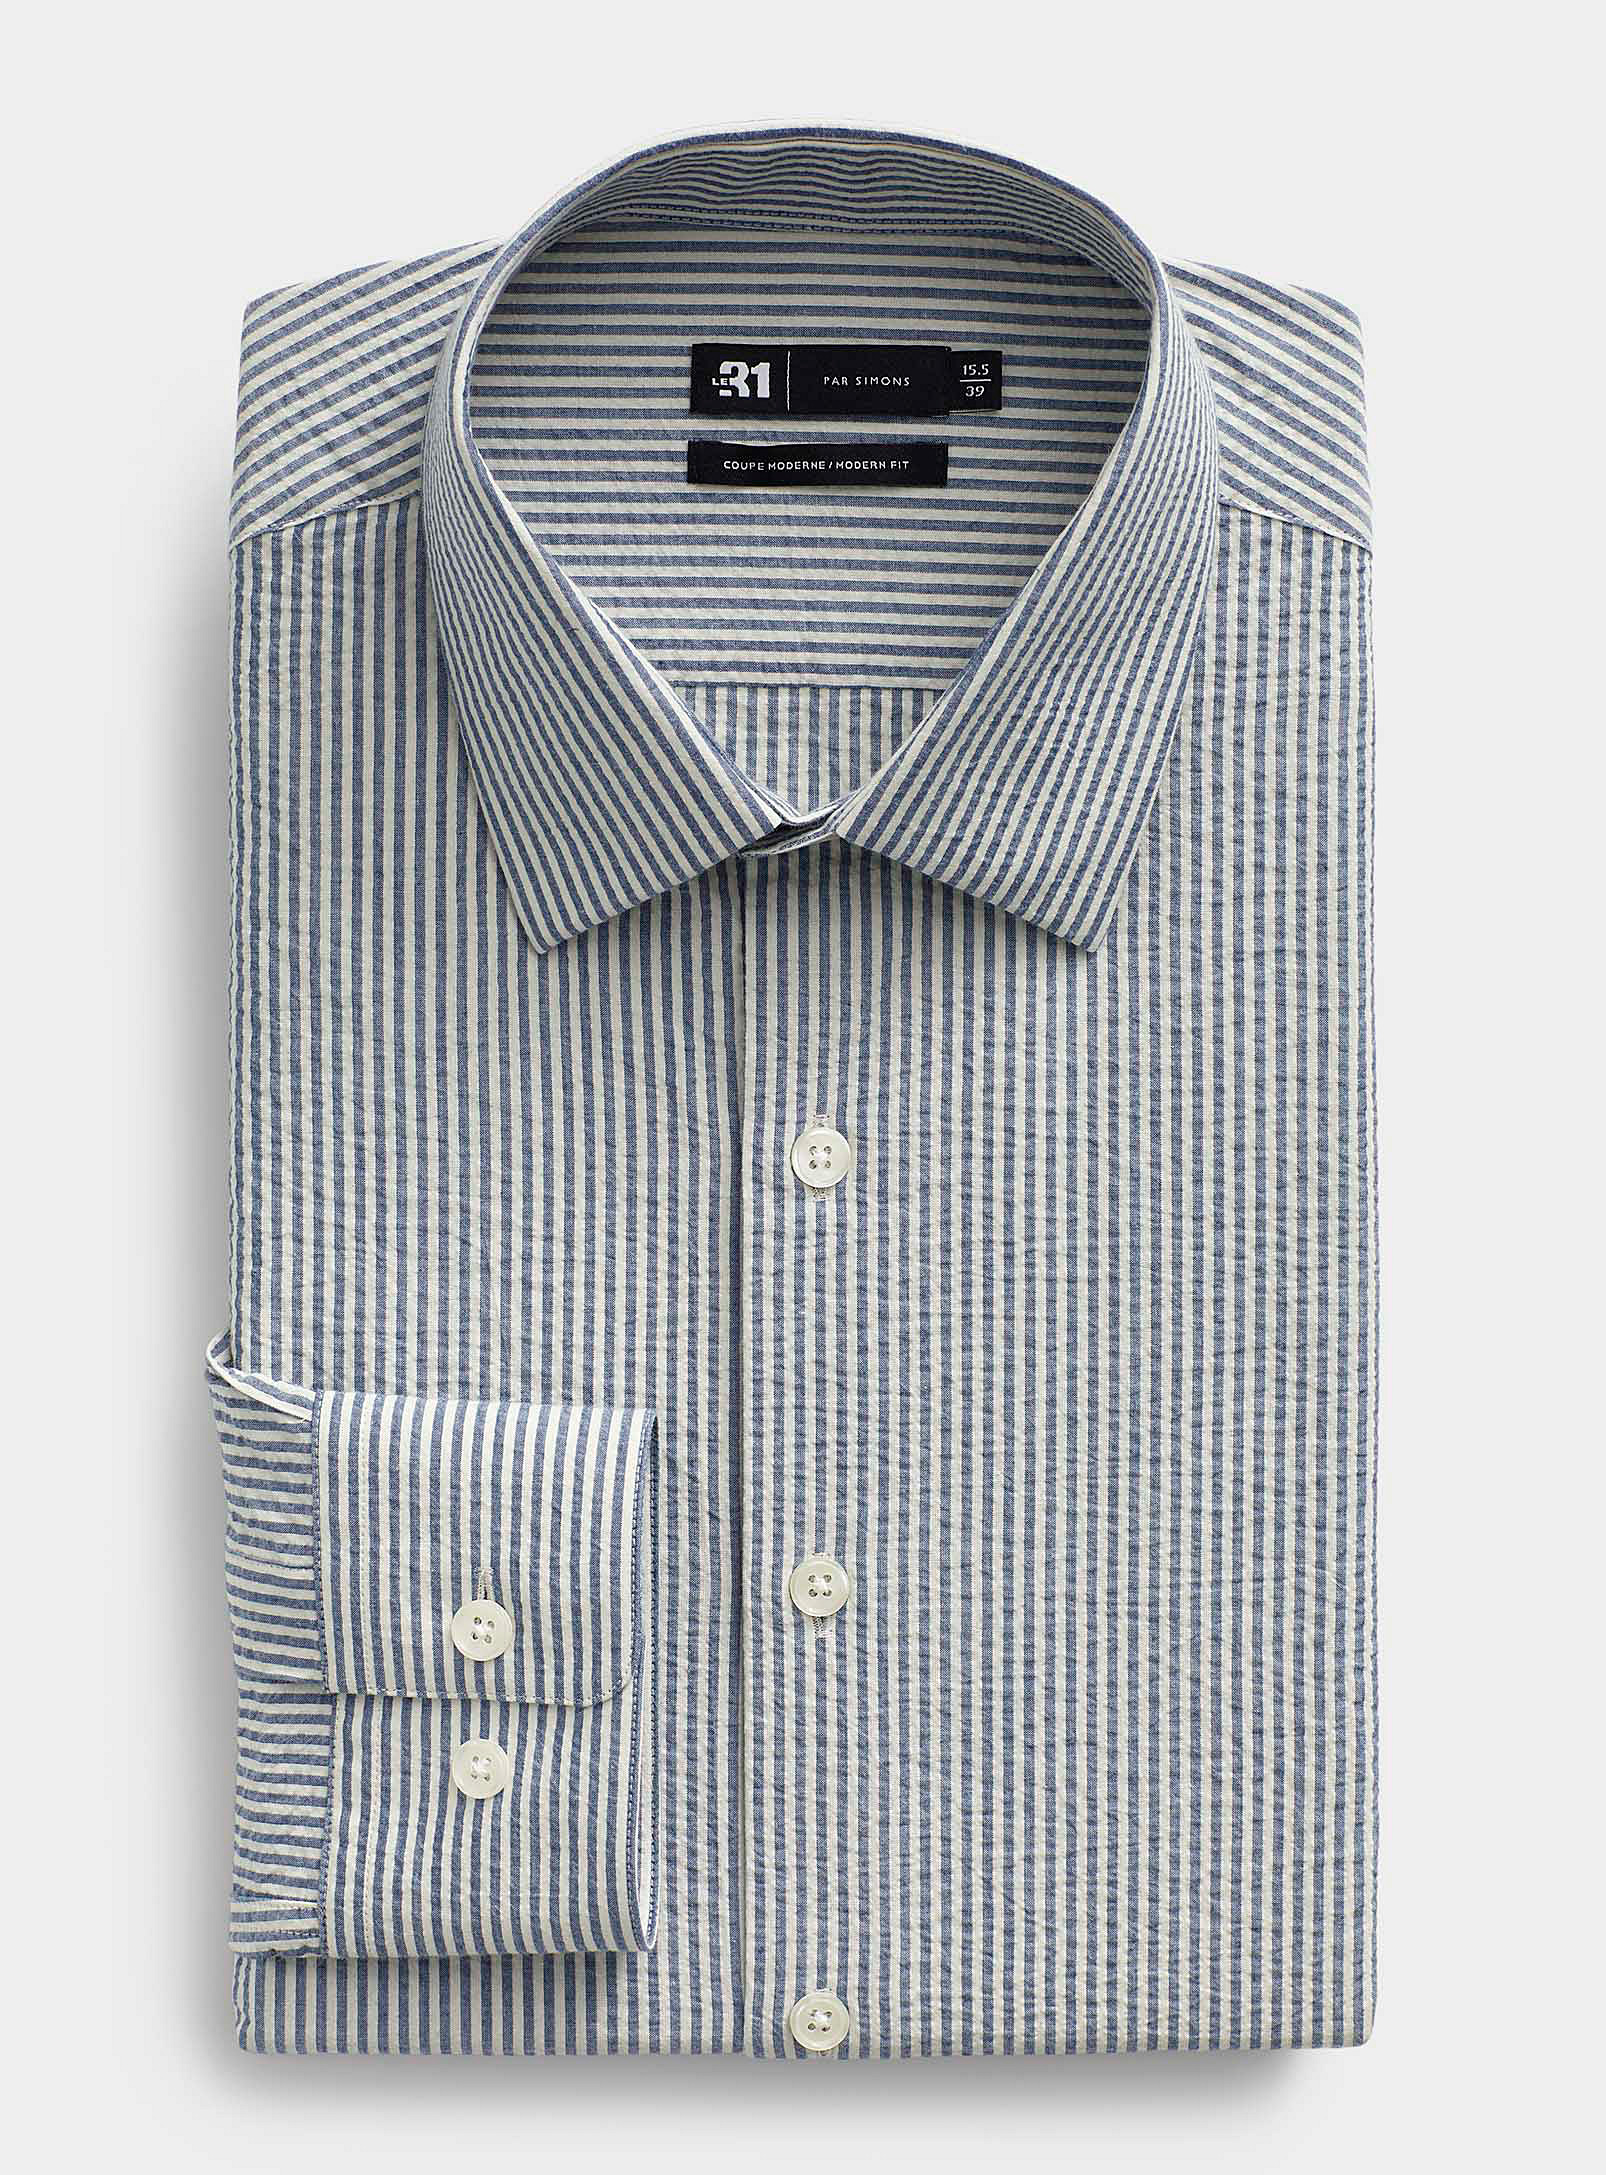 Le 31 - Men's Twin-stripe seersucker shirt Modern fit